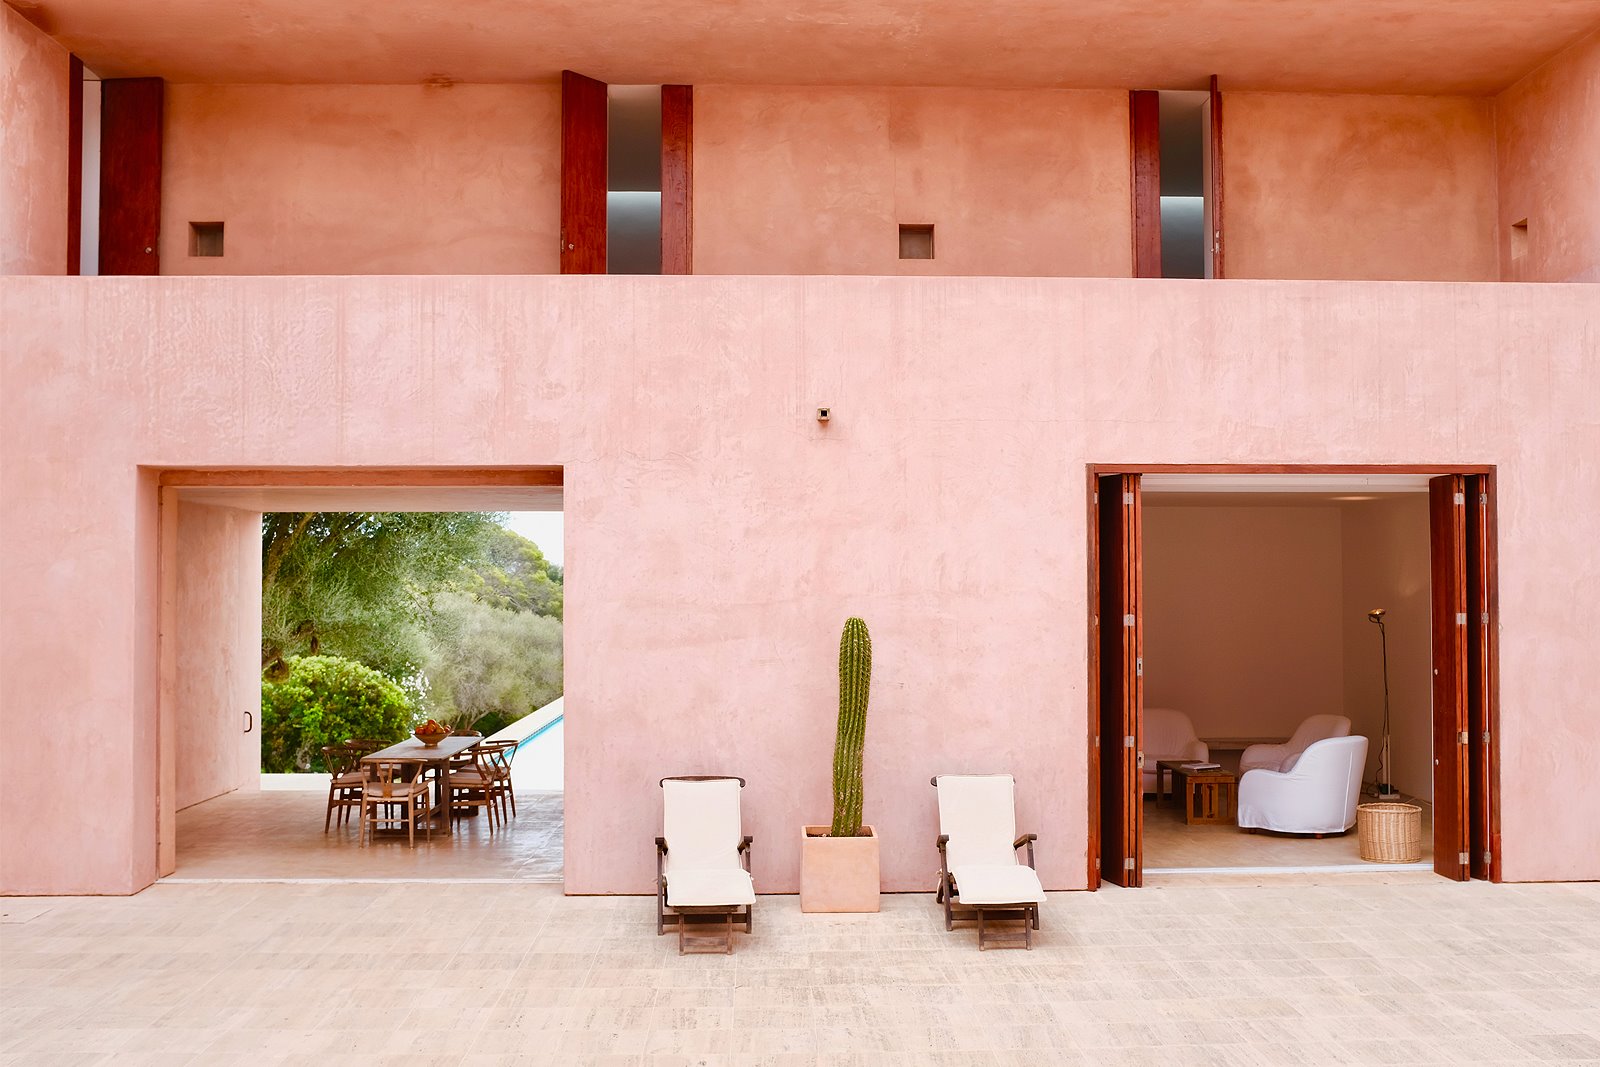 Casa de color rosa de claudio Silvestrin y John pawson en Mallorca comedor exterior y vista del salón